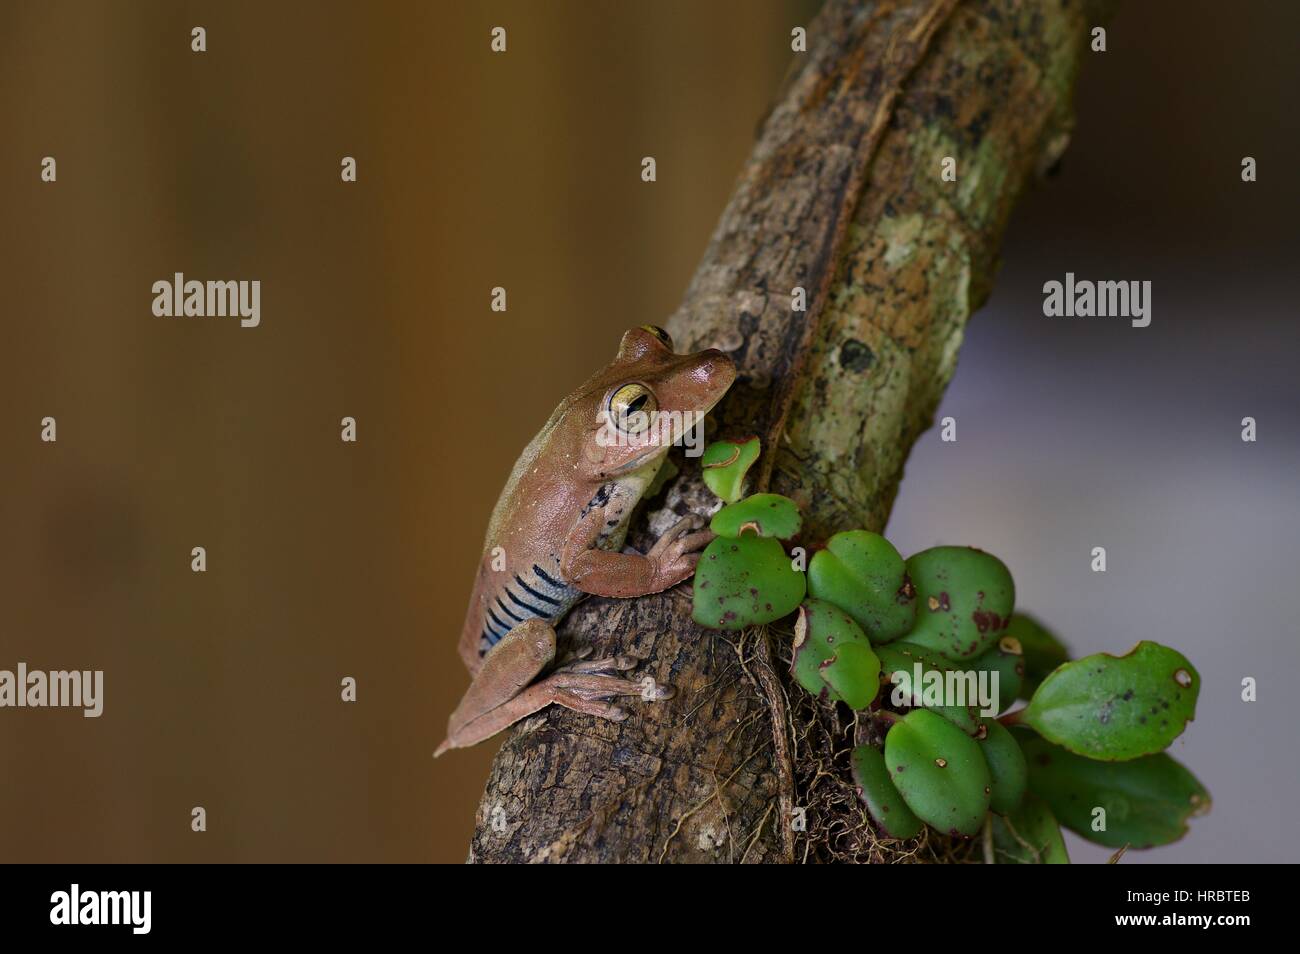 A Convict Tree Frog (Hypsiboas calcaratus) in the Amazon rainforest in Loreto, Peru Stock Photo